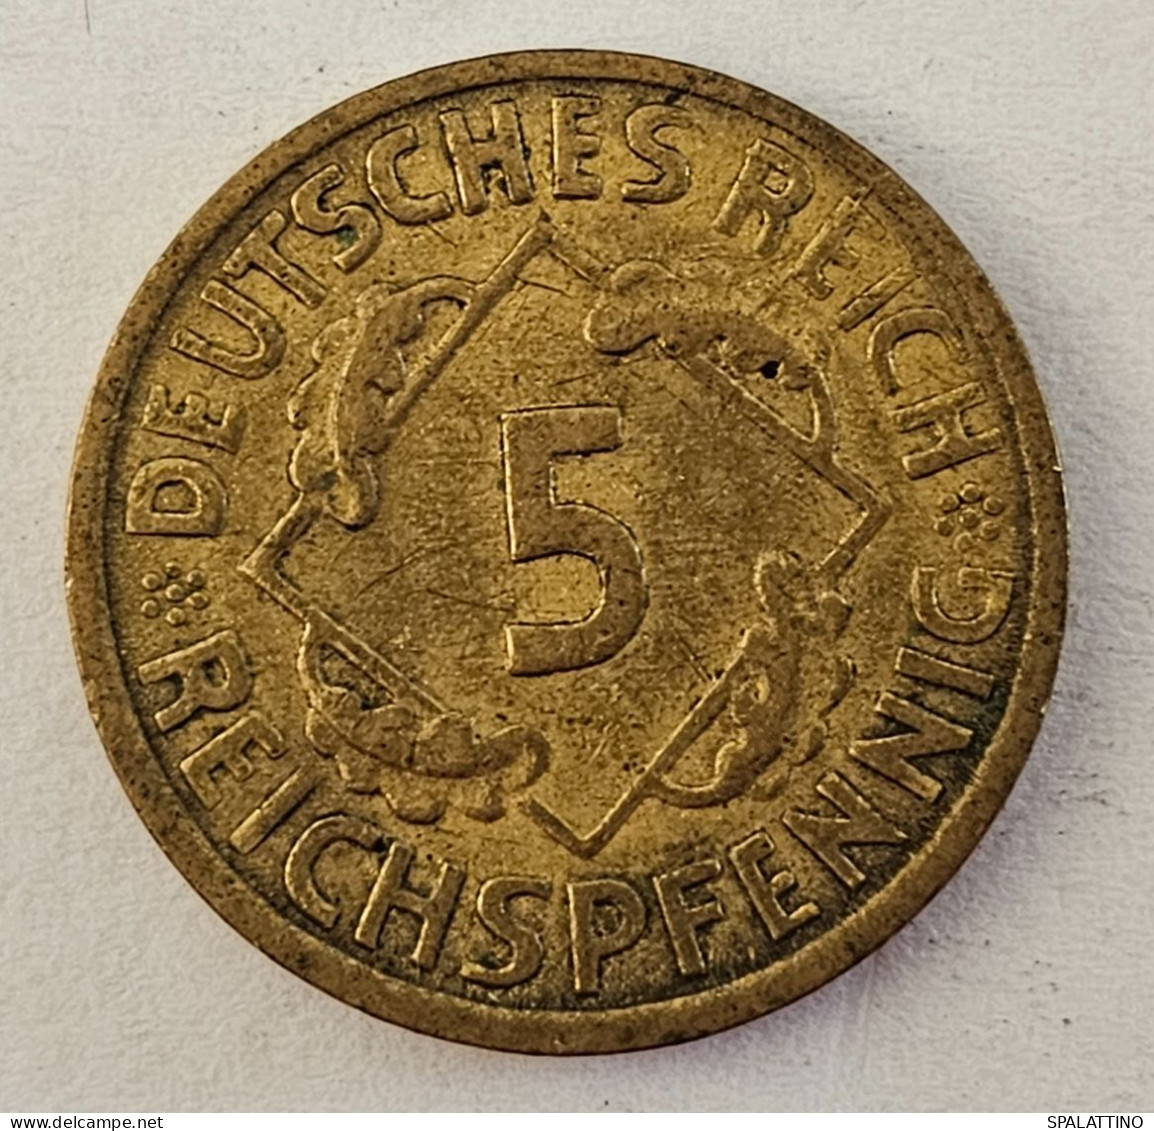 DEUTSCHES REICH- 5 REICHSPFENNIG 1925. E - 5 Rentenpfennig & 5 Reichspfennig